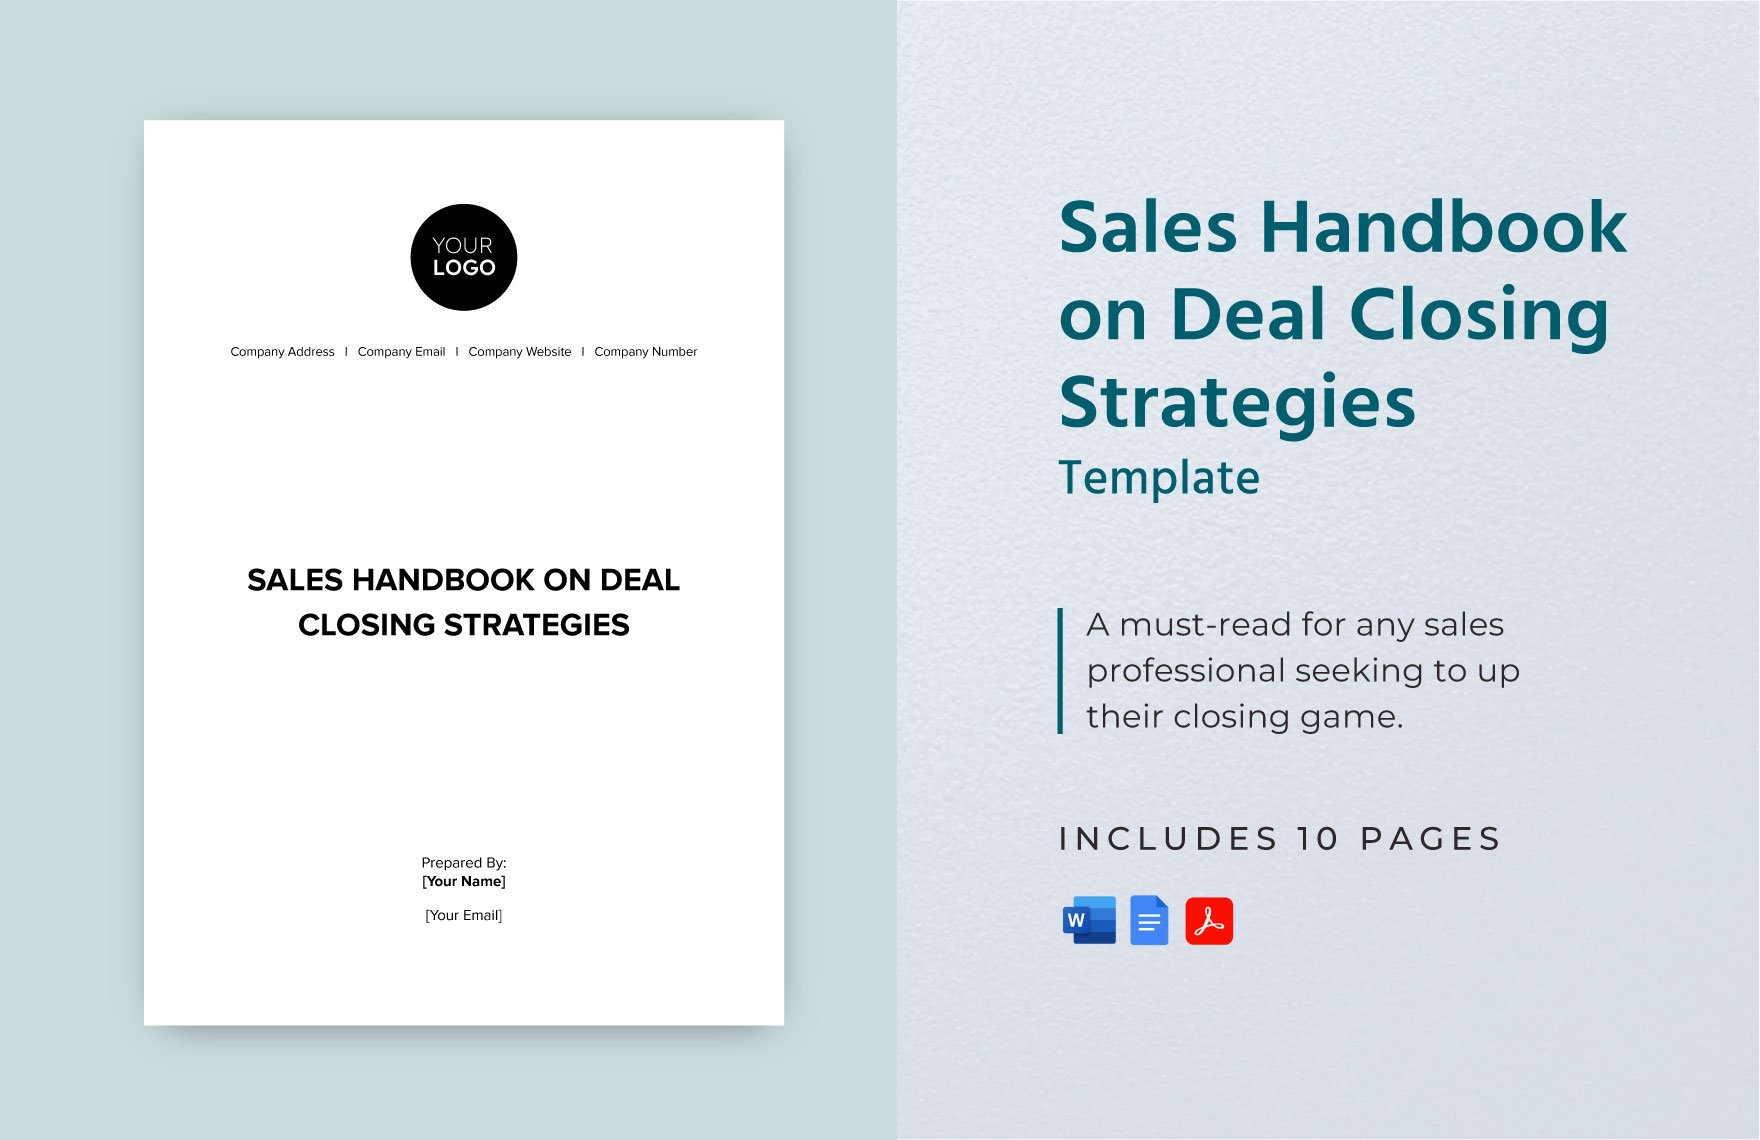 Sales Handbook on Deal Closing Strategies Template in Word, Google Docs, PDF